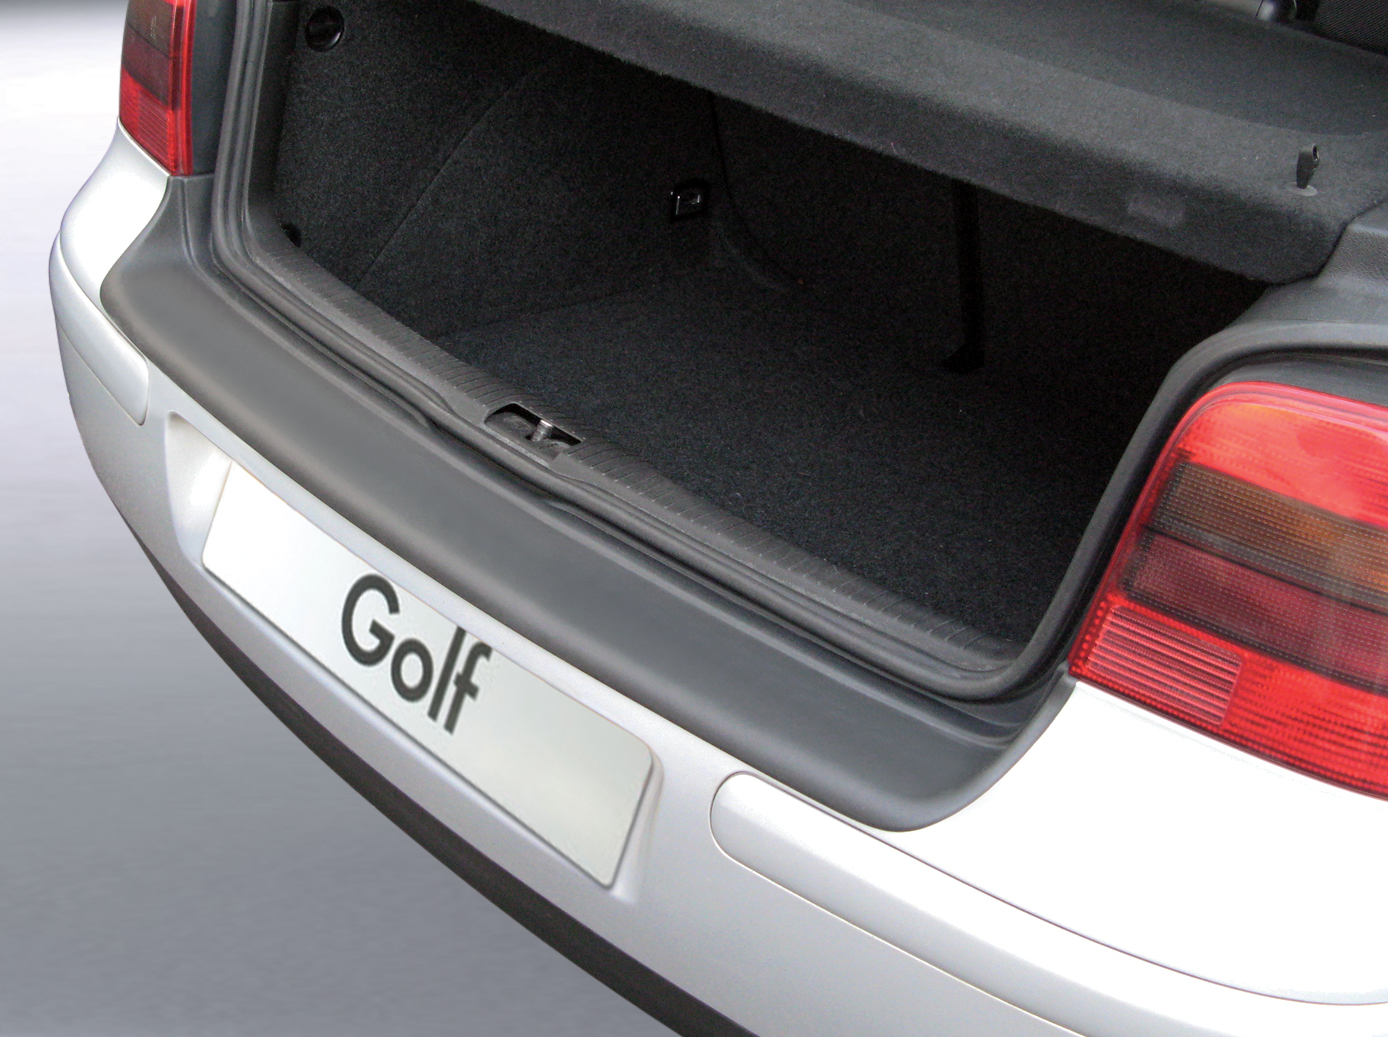 Ladekantenschutz mit Abkantung passend für Volkswagen Golf IV 3 & 5 Türer  VW (MK 4) ab BJ. 09.1997 bis 08.2003 ABS Farbe schwarz